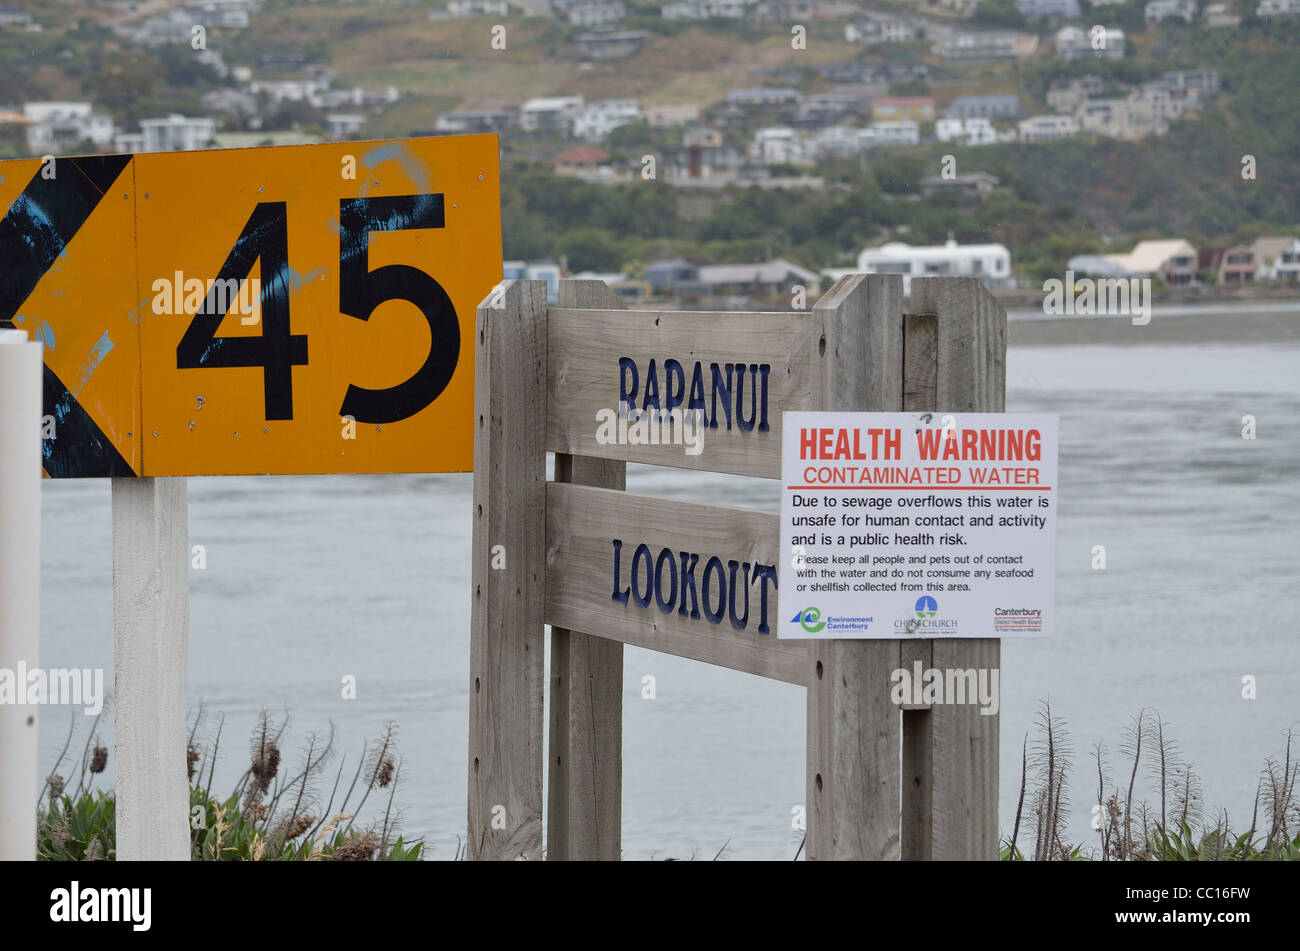 Signe de l'eau contaminés Rapanui Lookout Nouvelle-zélande Banque D'Images